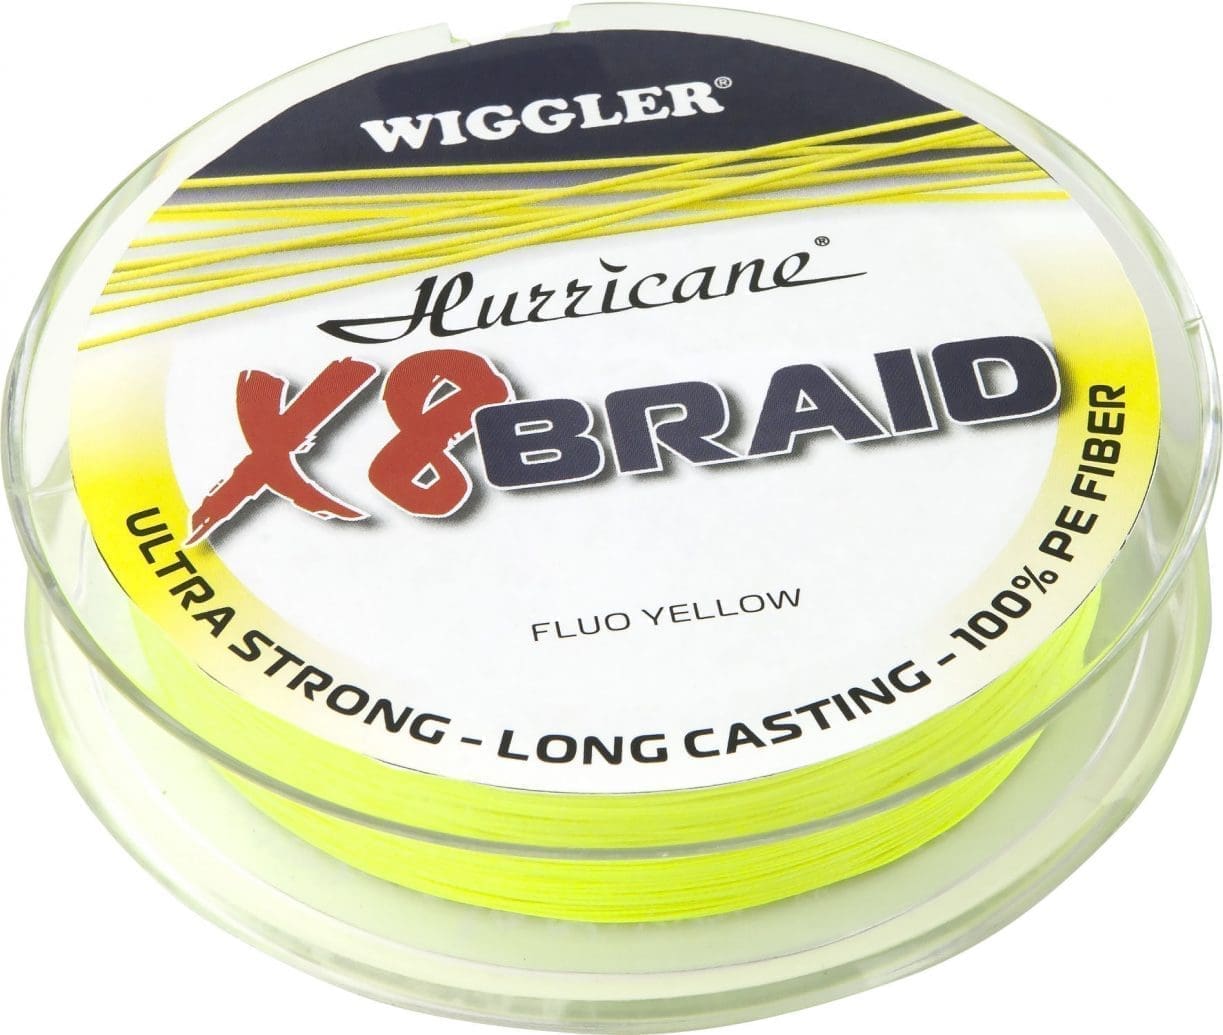 Hurricane X8 Braid Fluo Yellow 270m